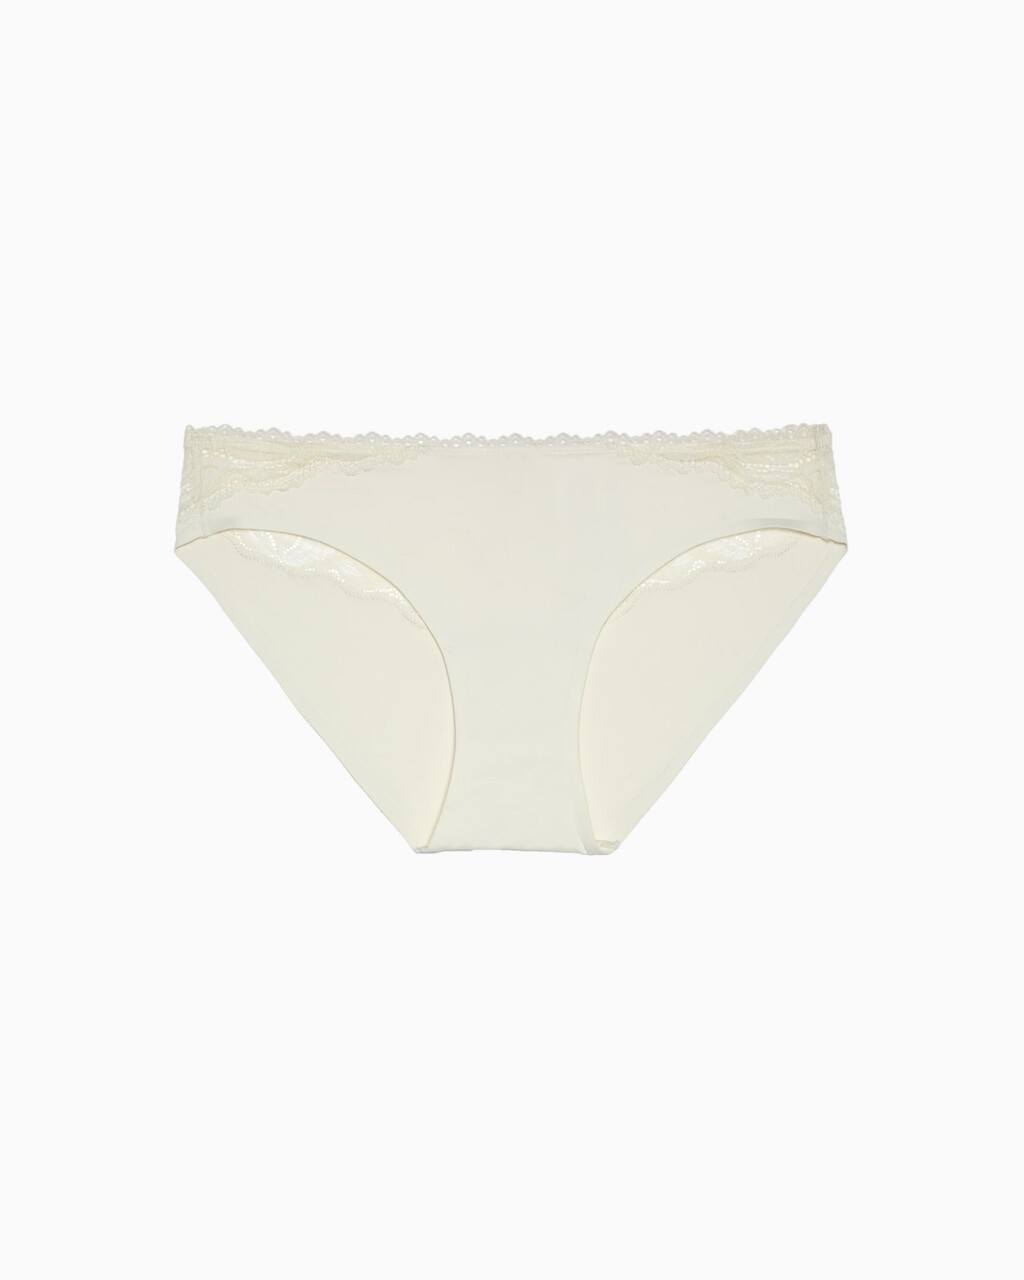 Seductive Comfort Lotus Floral Bikini, Ivory, hi-res